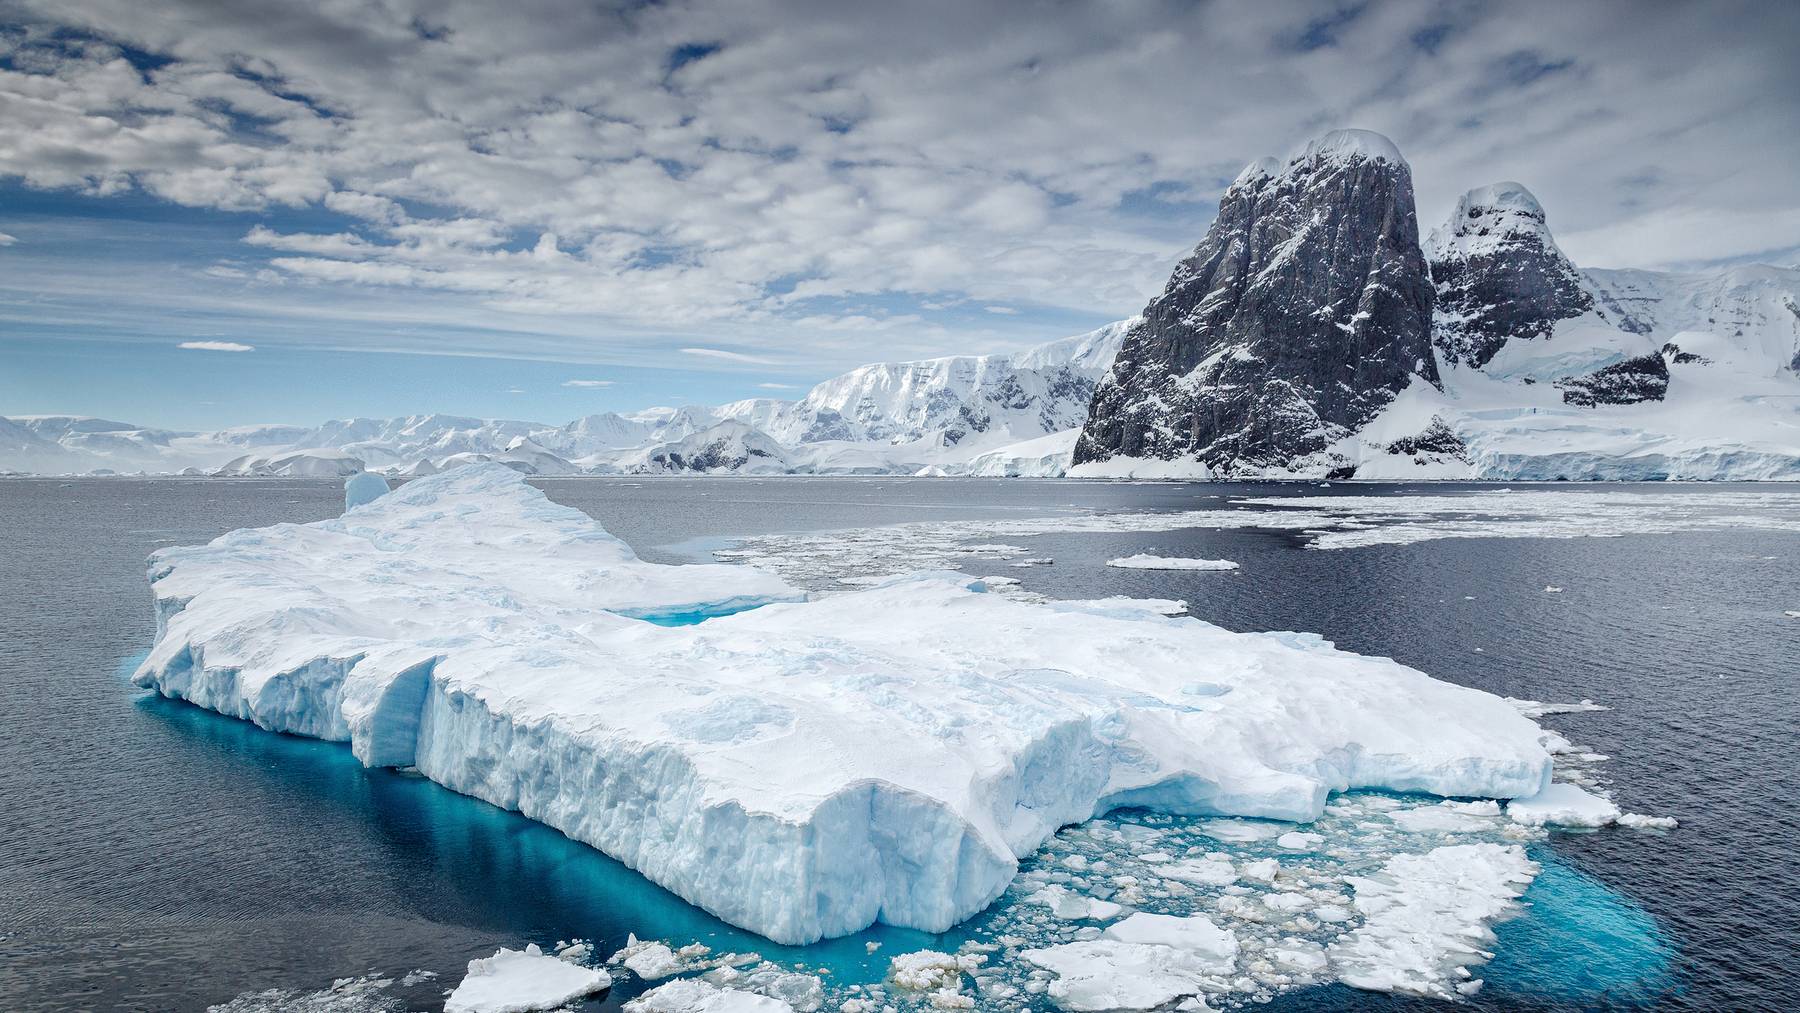 Wolken über einem auf dem Wasser treibenden Eisberg, Antarktis